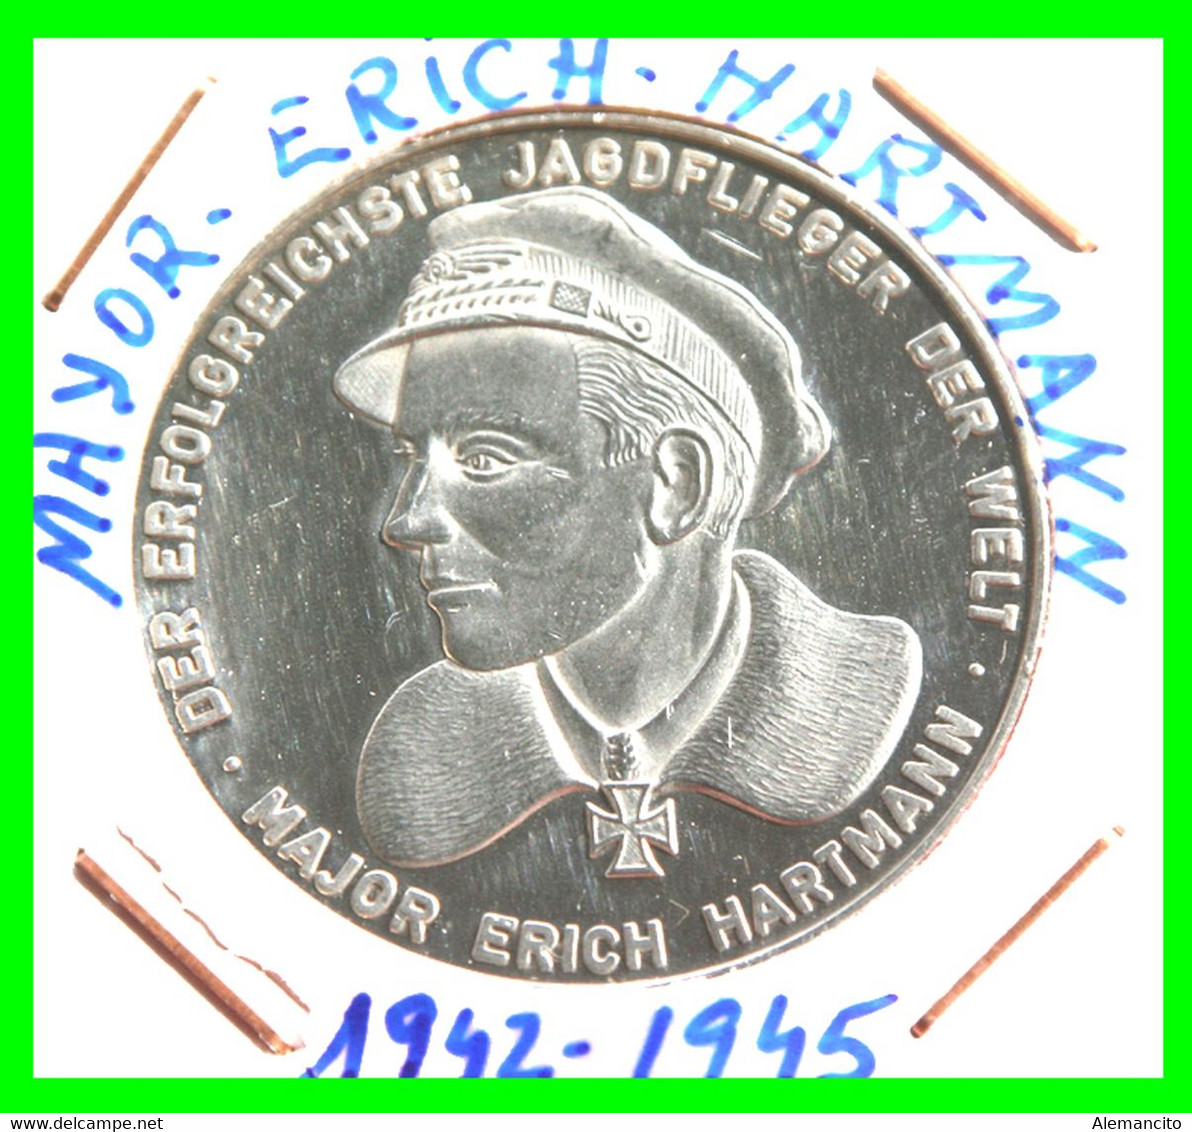 MEDALLA ( MONEDA ) CONMEMORATIVA MAYOR ERICH HARMAN 1942-1945 26.00 Gr PLATA 40 MM. DIAMETRO DER ERFOLGREICHSTE JAGDFLIE - Sammlungen